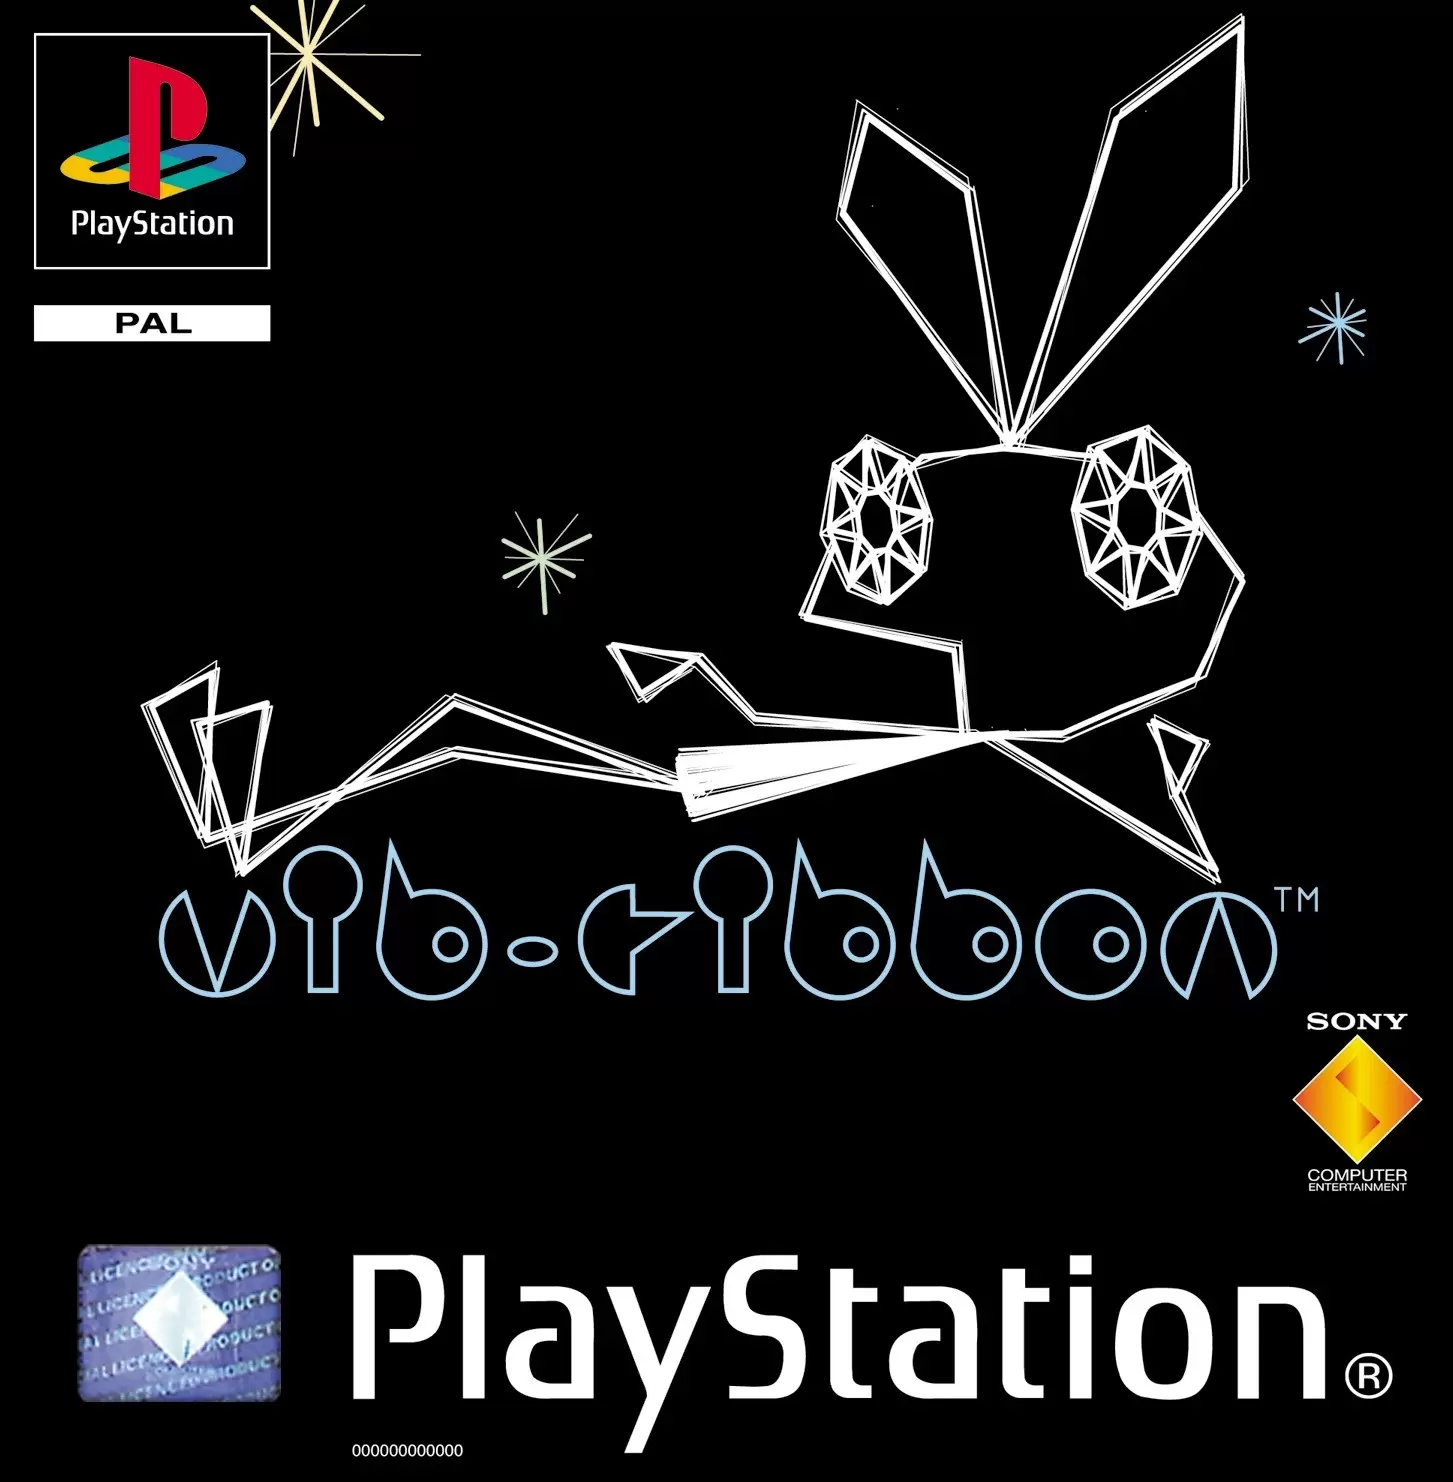 Playstation games - vib-ribbon